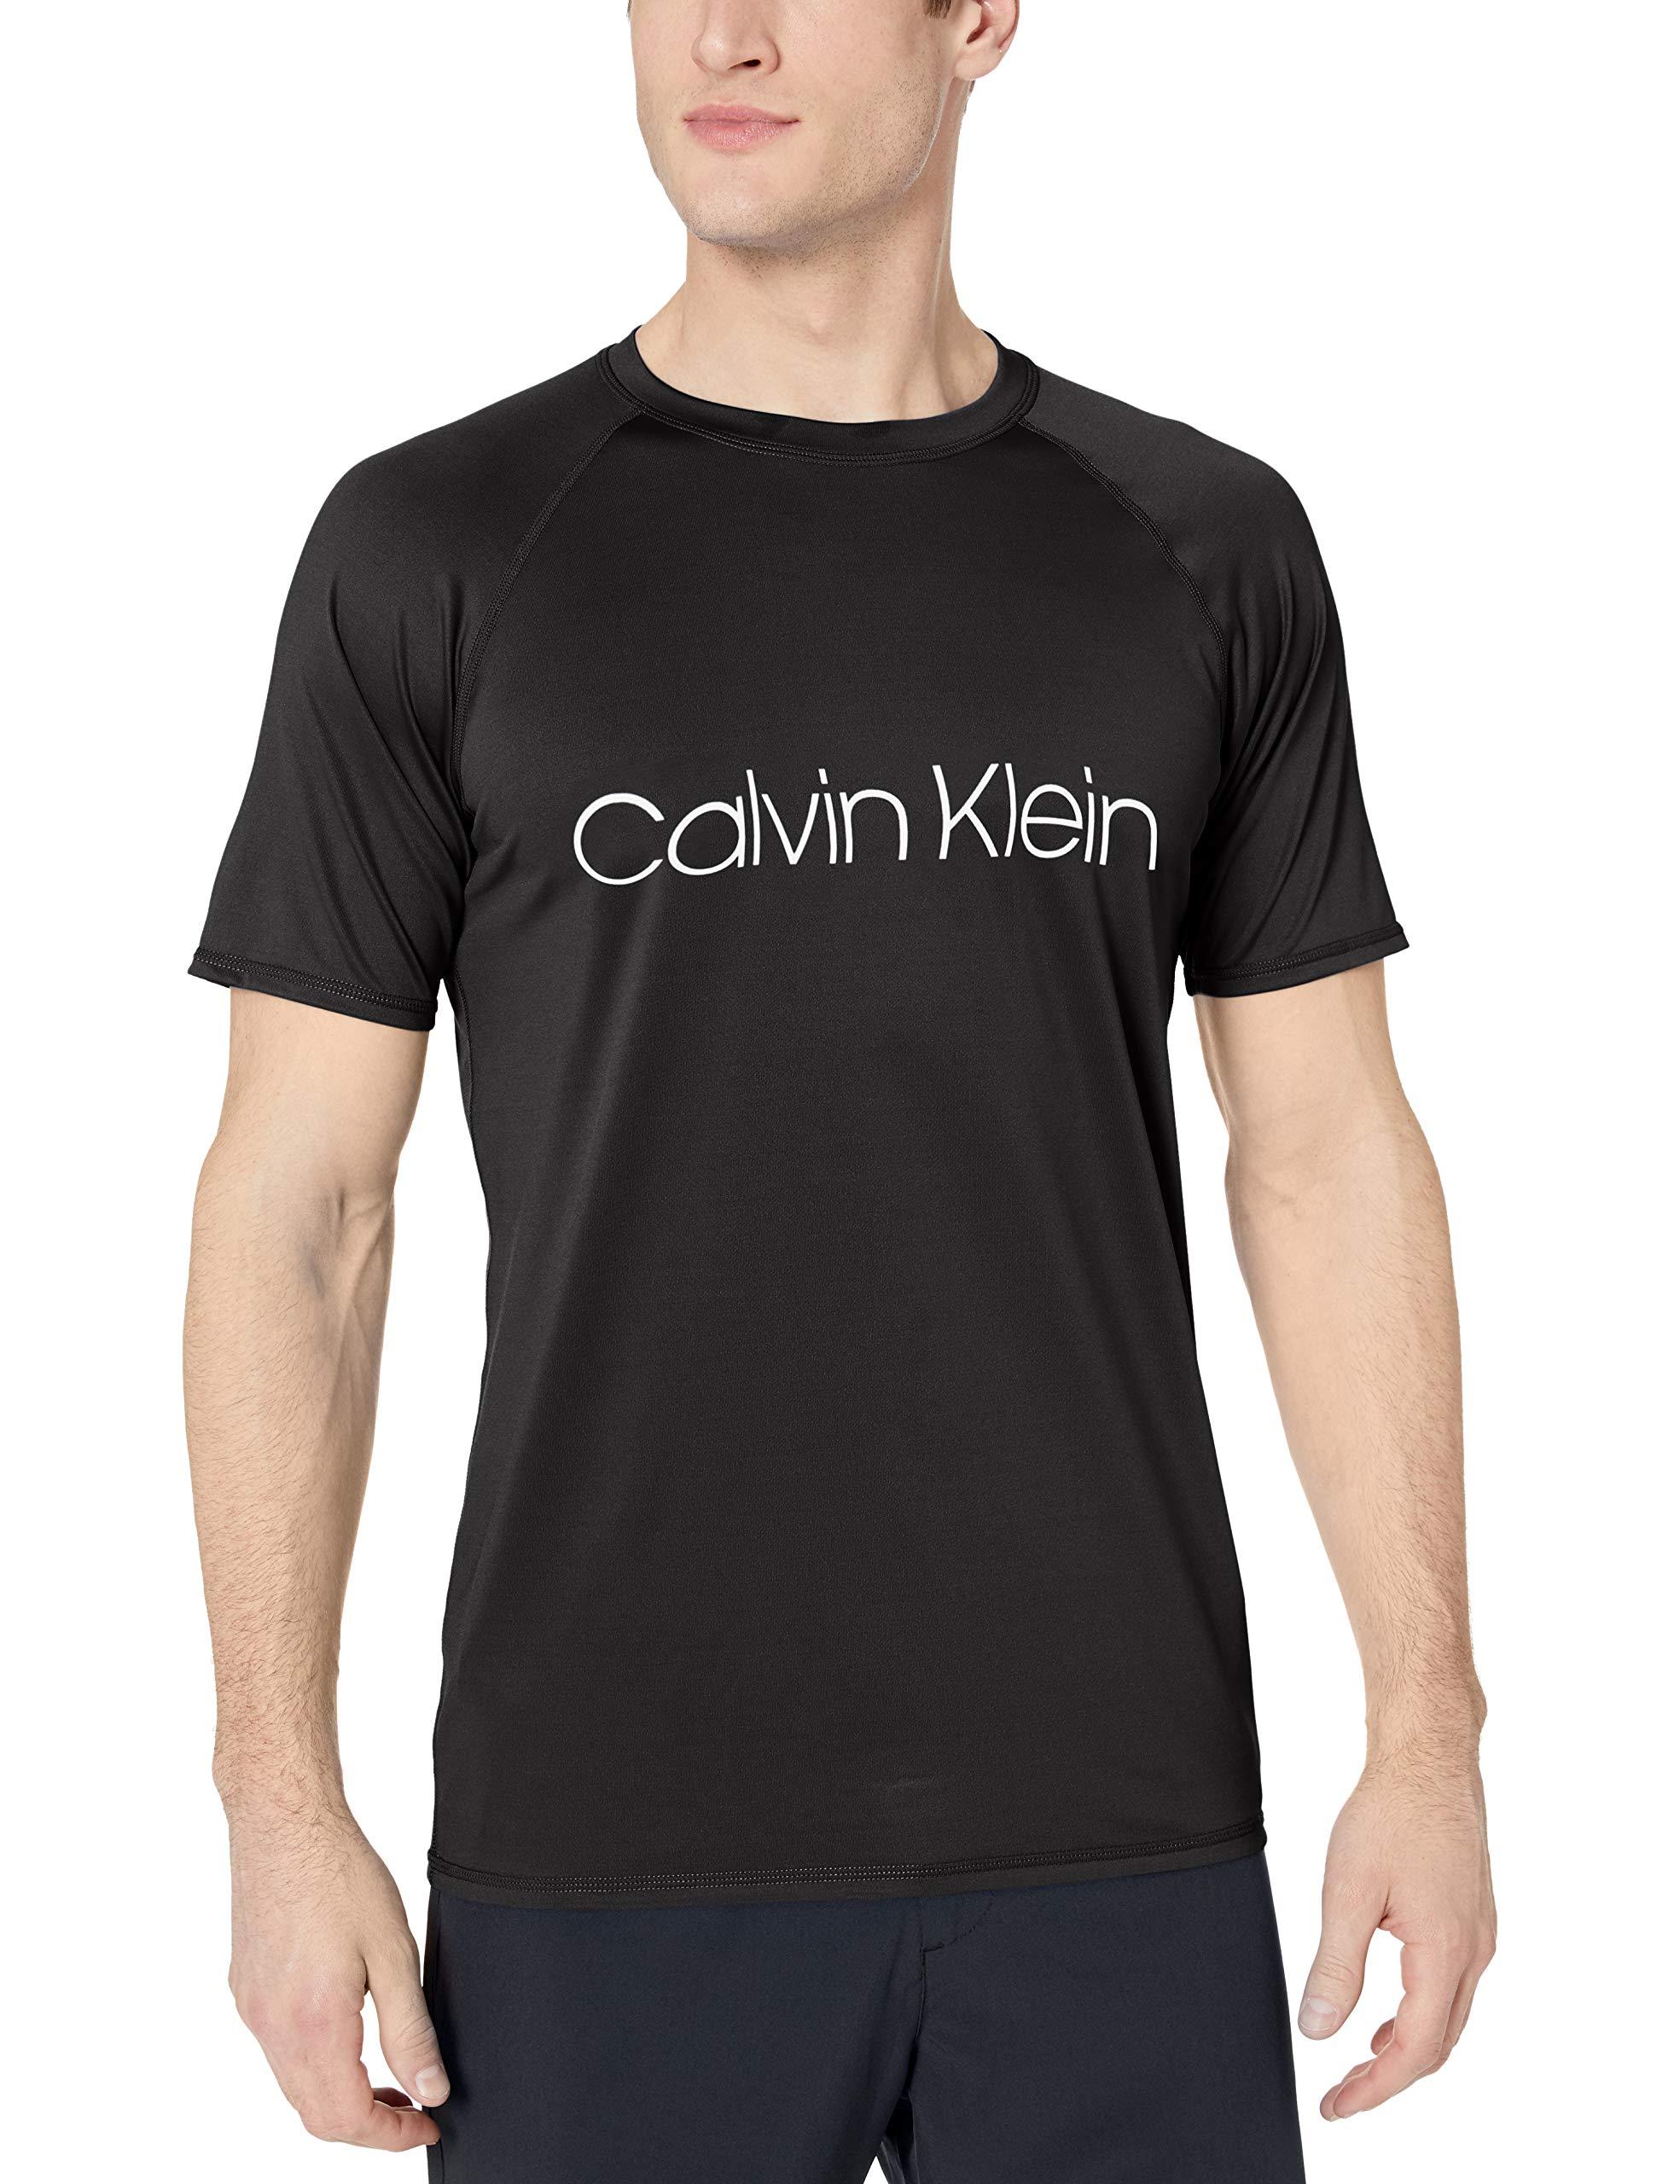 Descubrir 52+ imagen calvin klein swim shirts